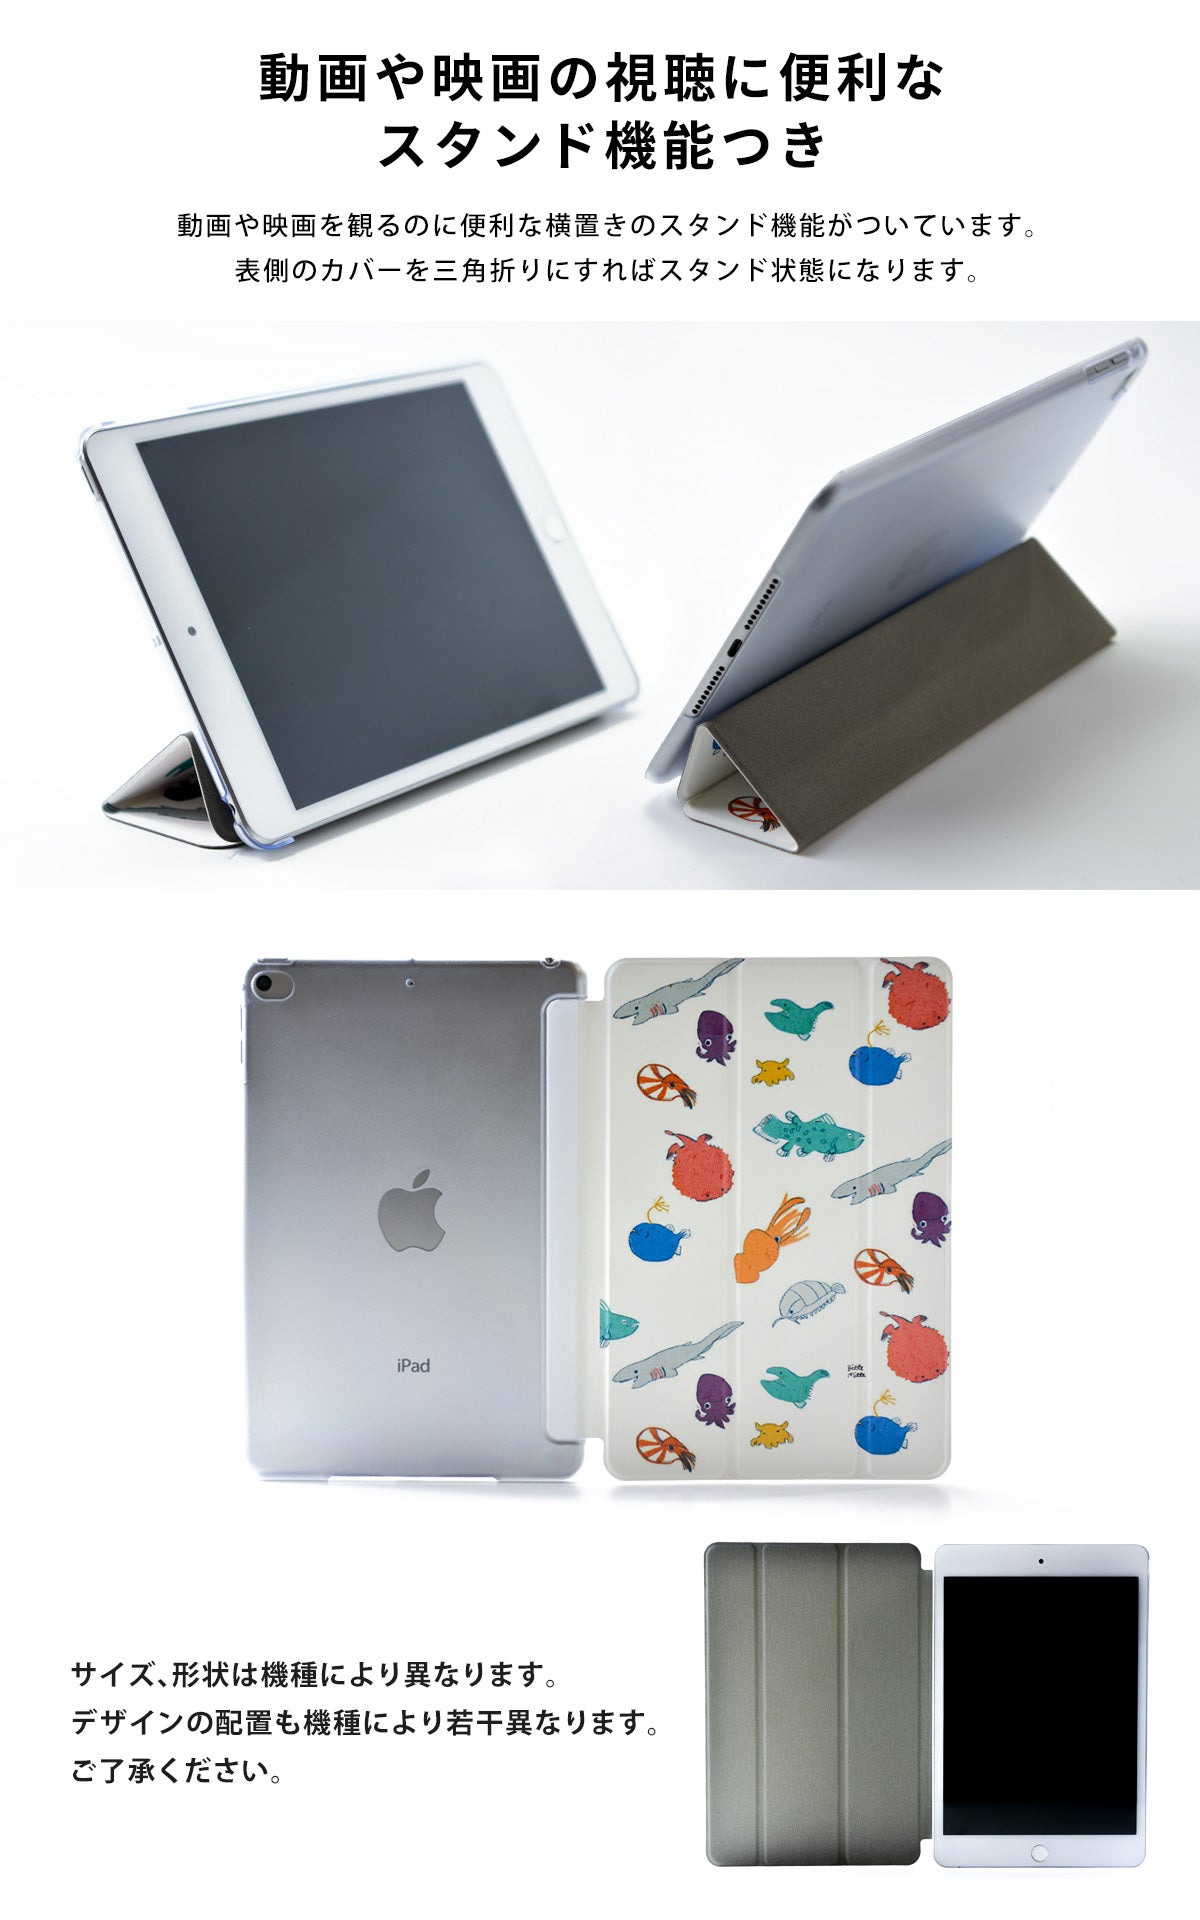 iPad カバー 強化ガラス 第5世代 第6世代 Air Air2 9.7インチ - iPad